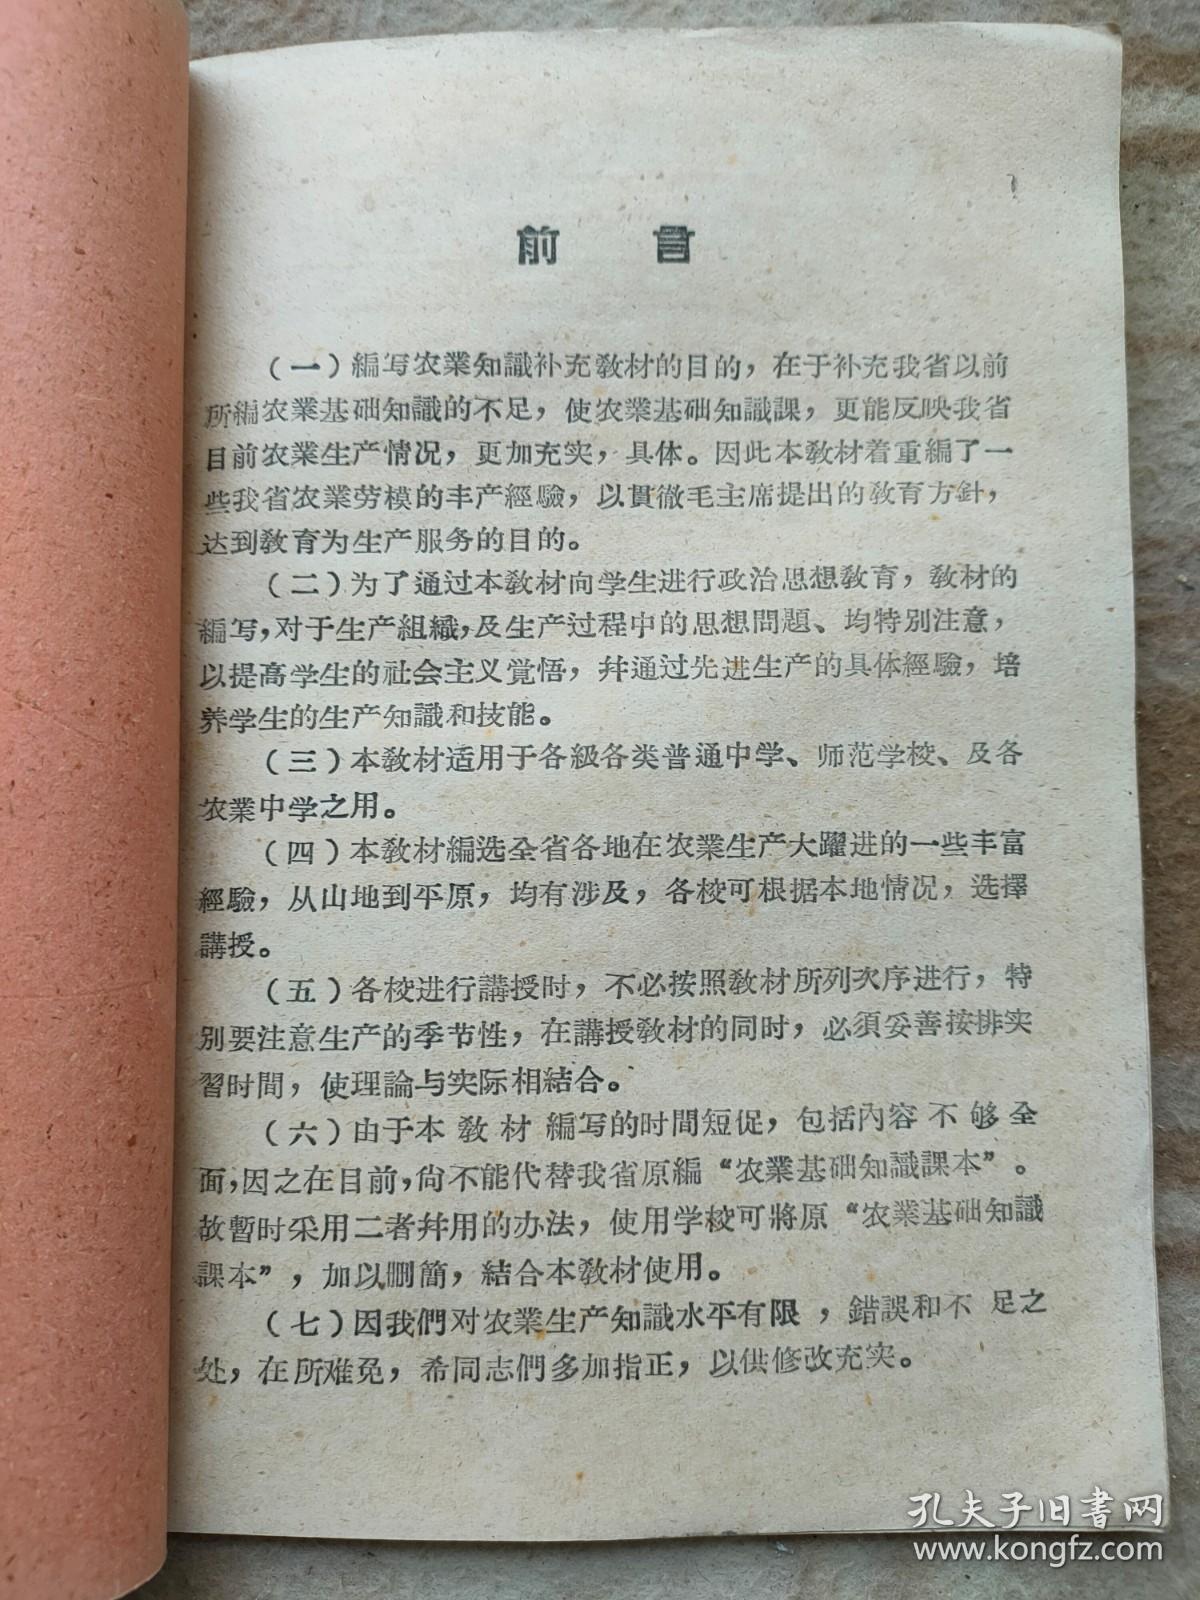 A16464，农业基础知识、馆藏书、五十年代发行少